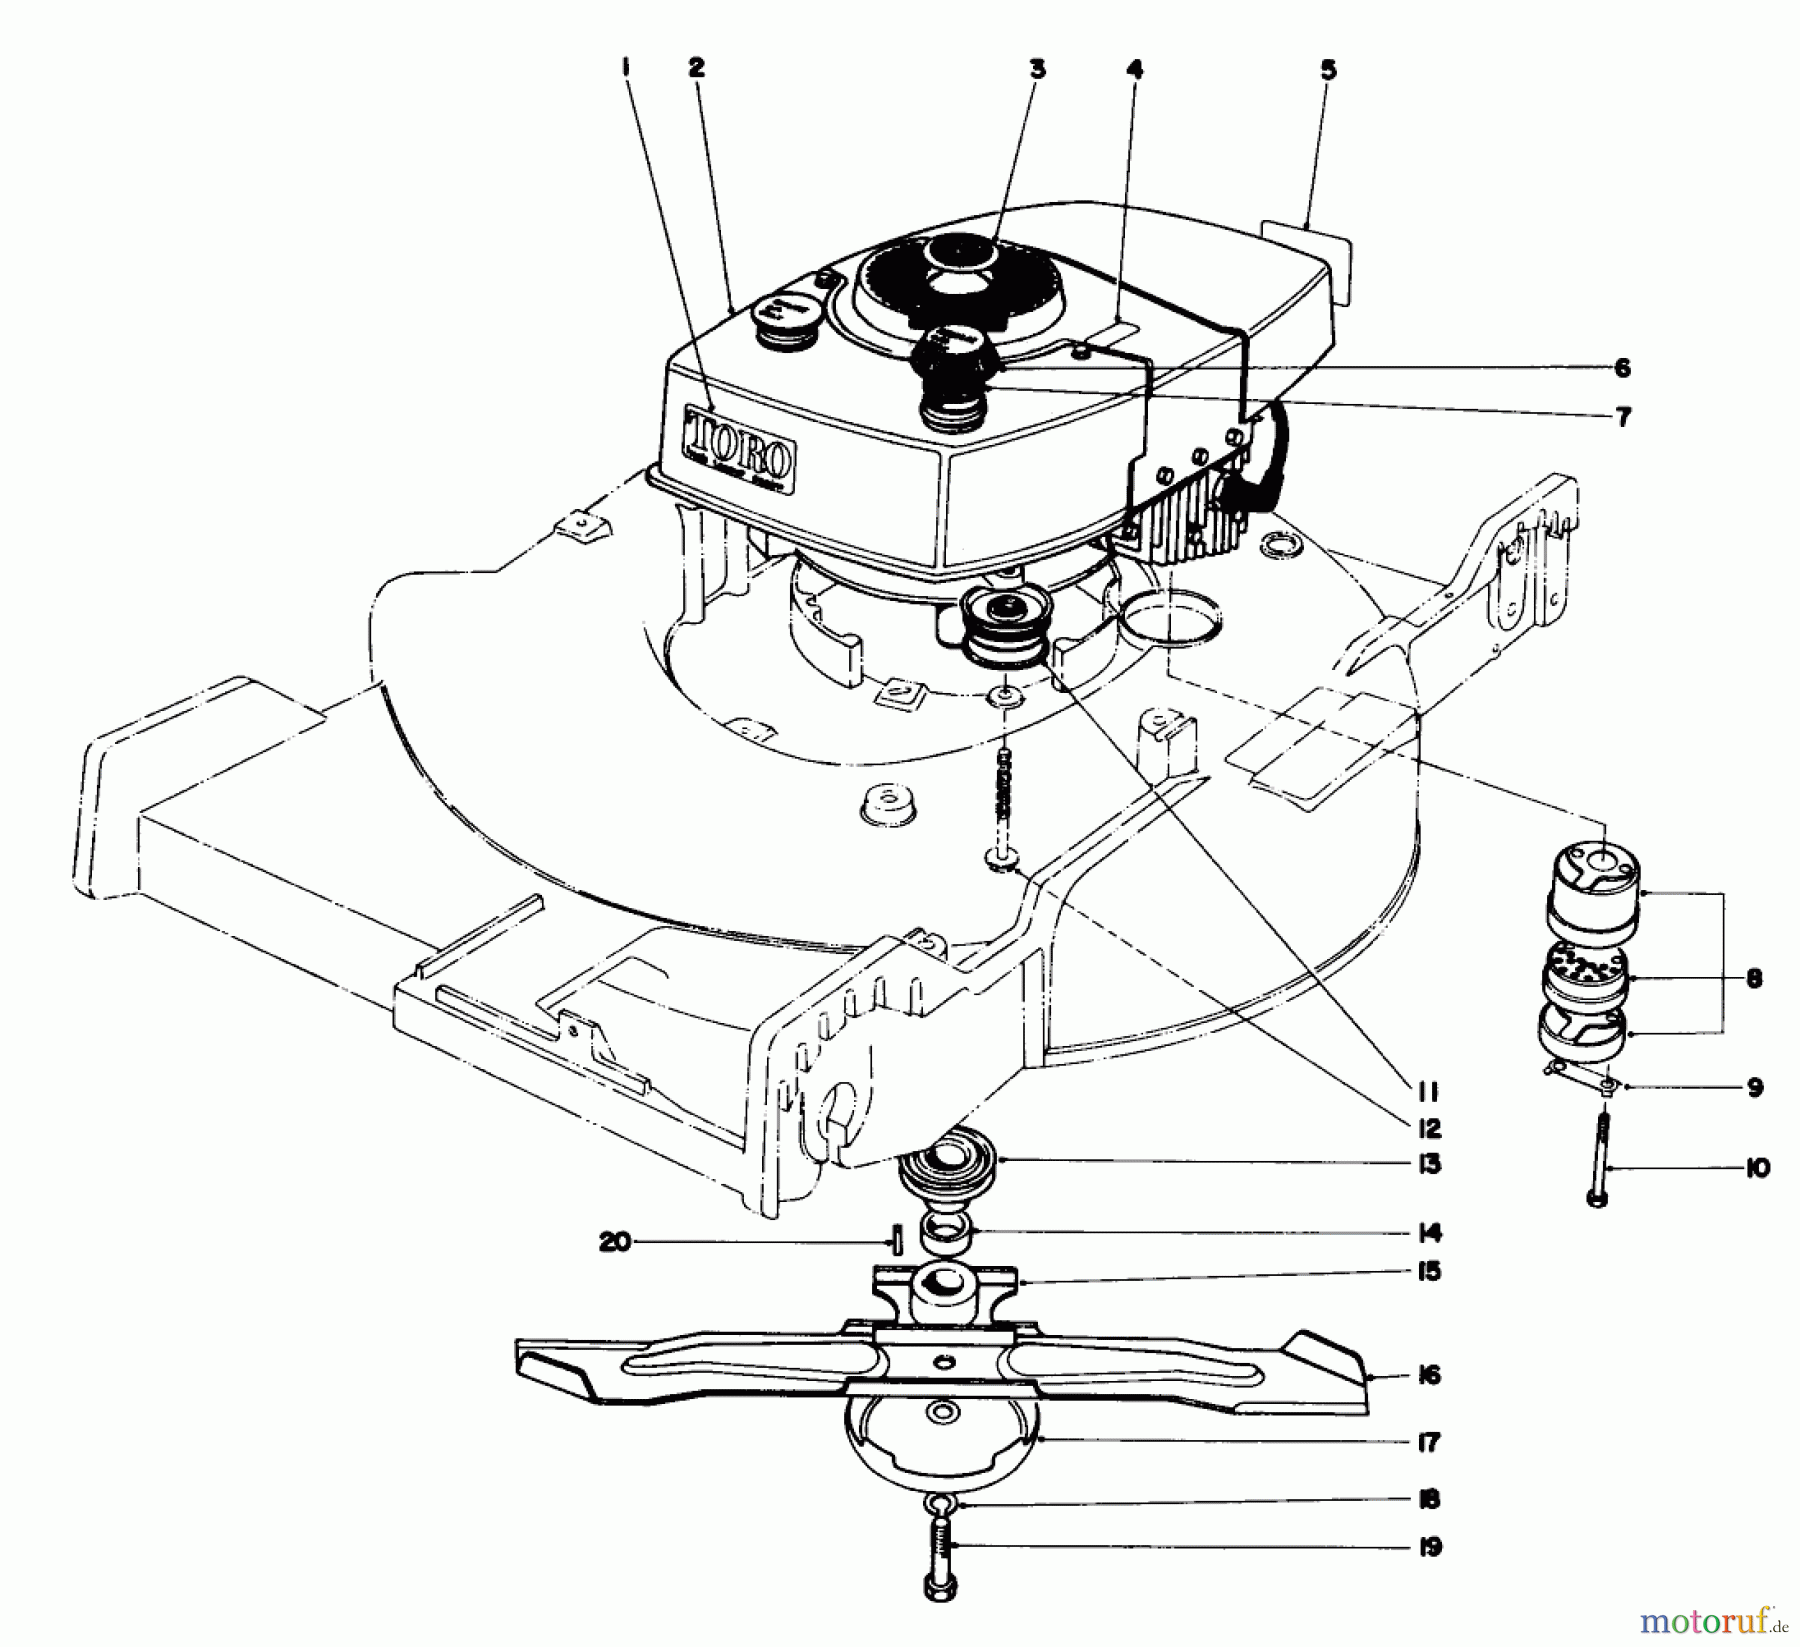  Toro Neu Mowers, Walk-Behind Seite 1 20550 - Toro Lawnmower, 1974 (4000001-4999999) ENGINE ASSEMBLY MODEL NO. 20550